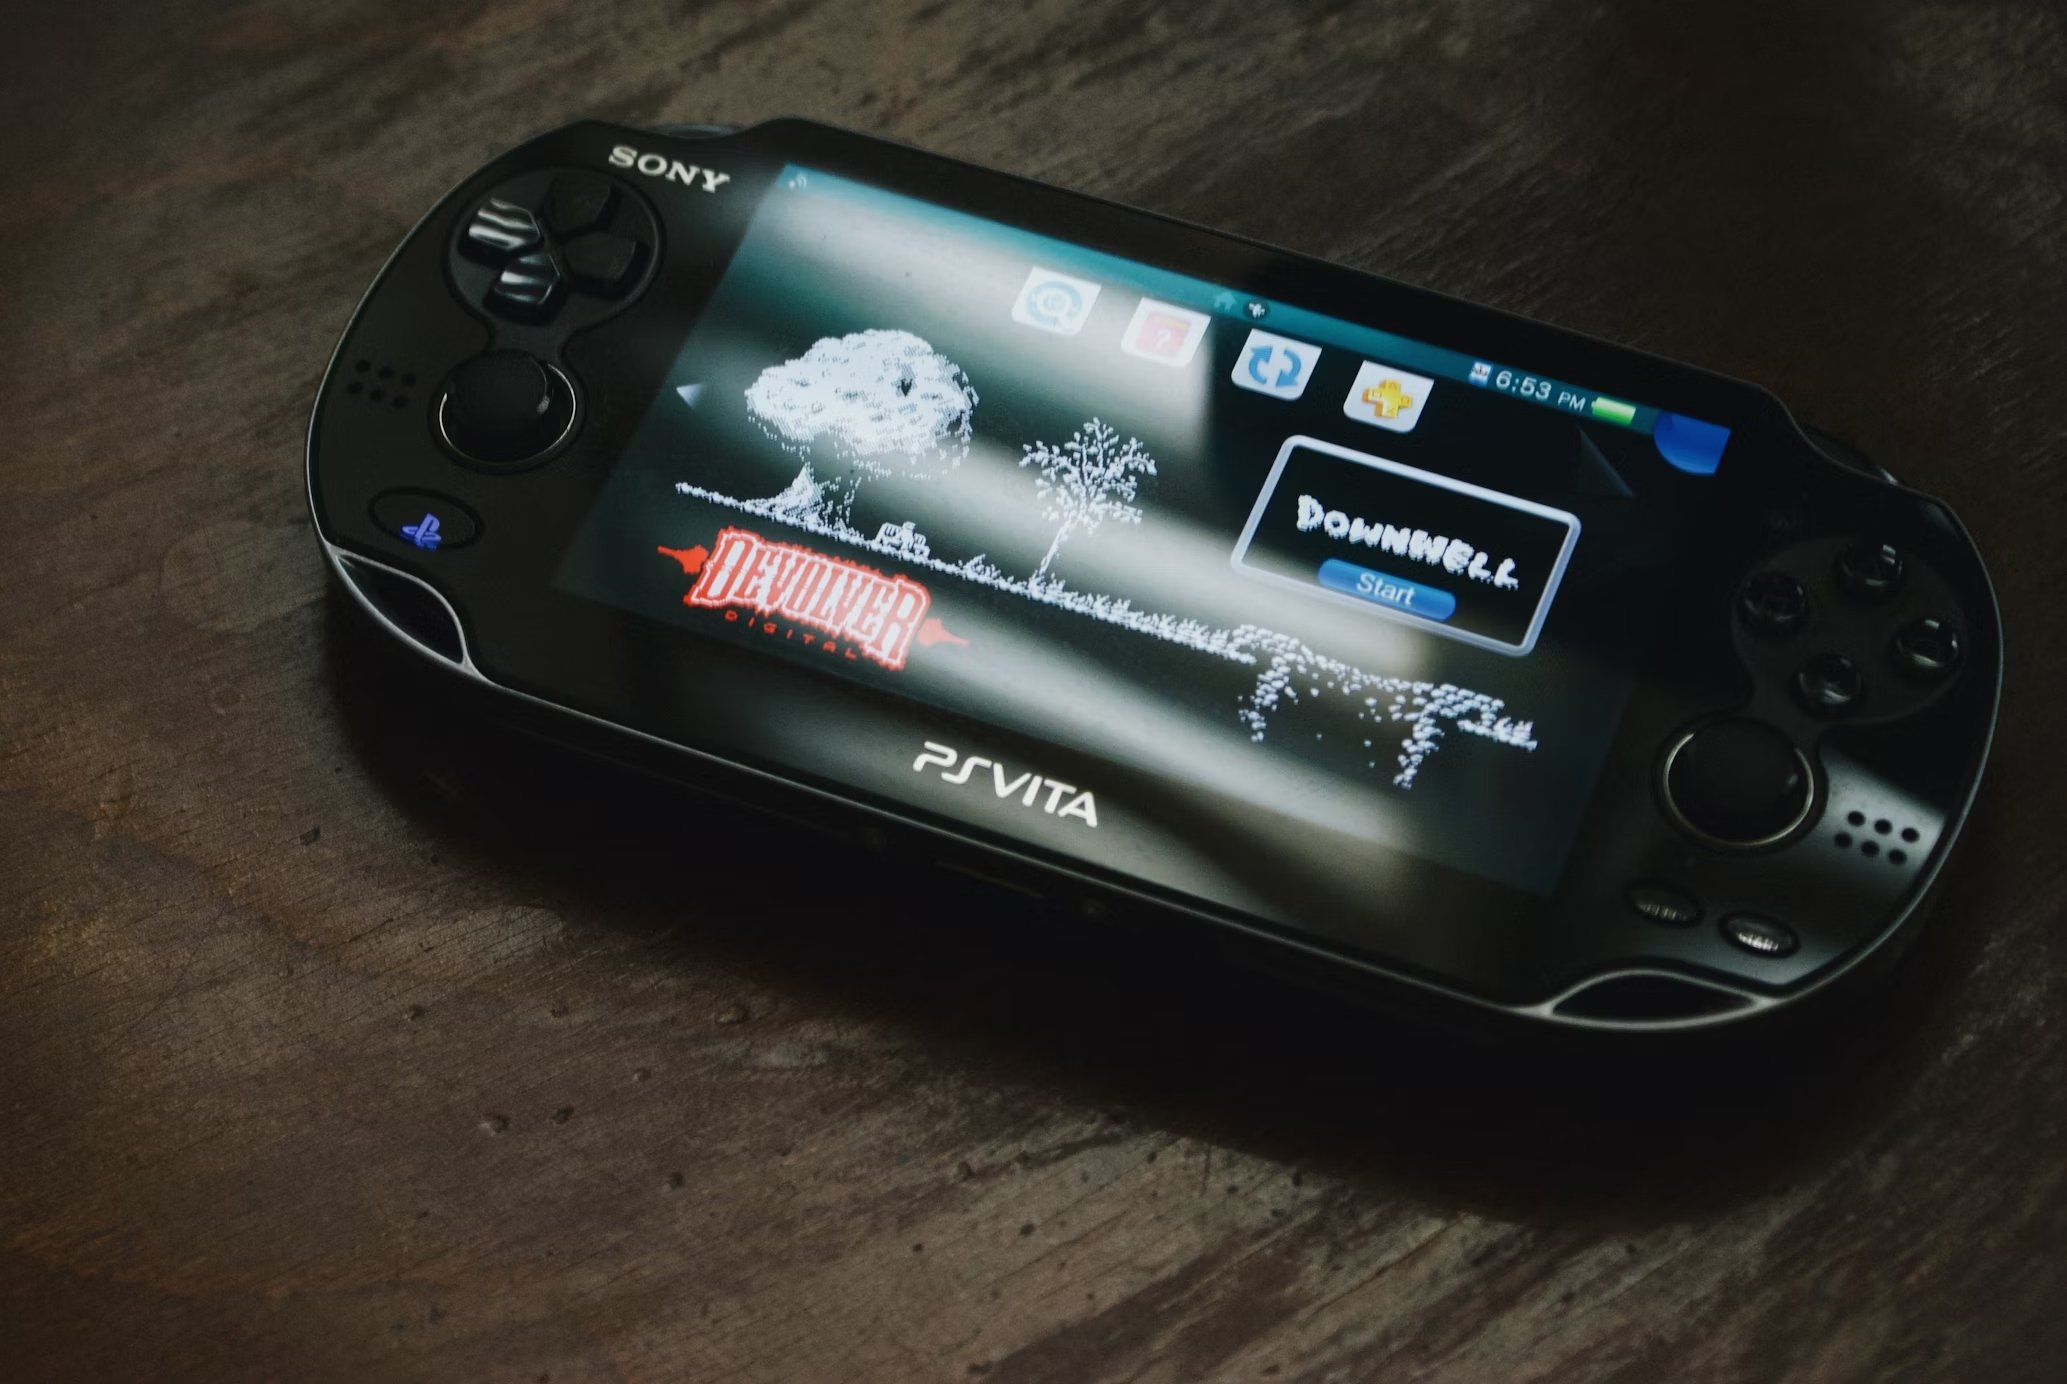 Consola Sony Playstation Vita